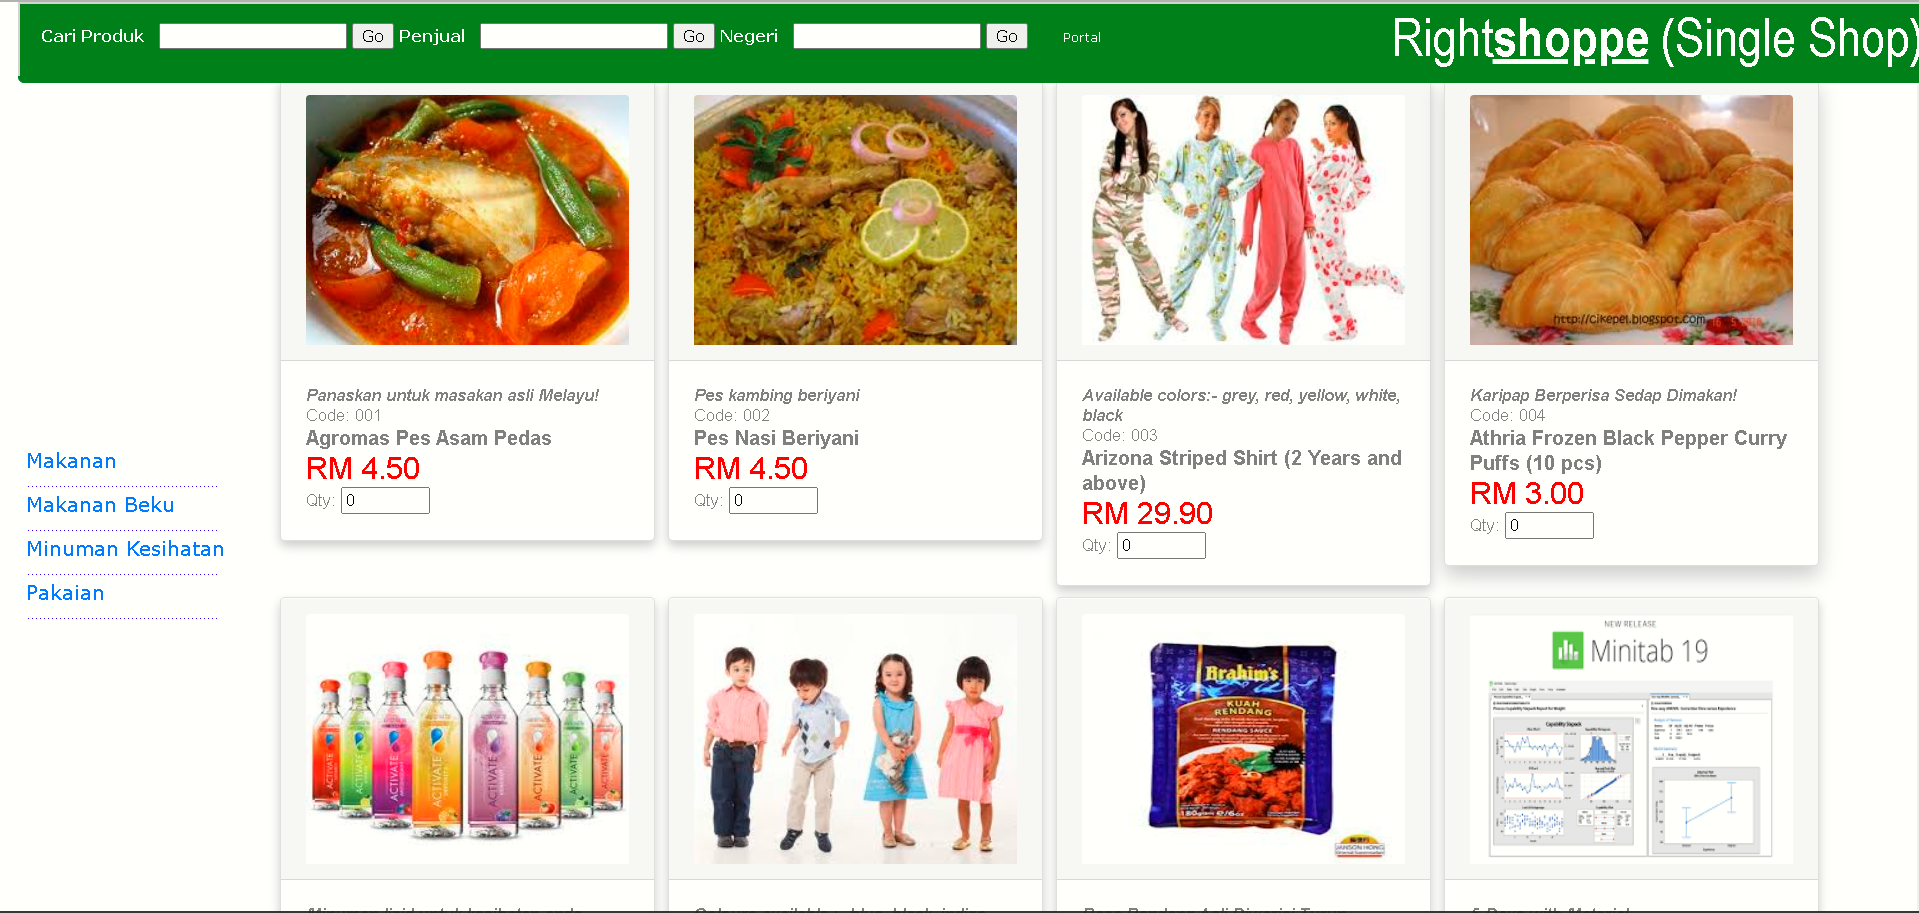 Lazada-like shopping catalog online